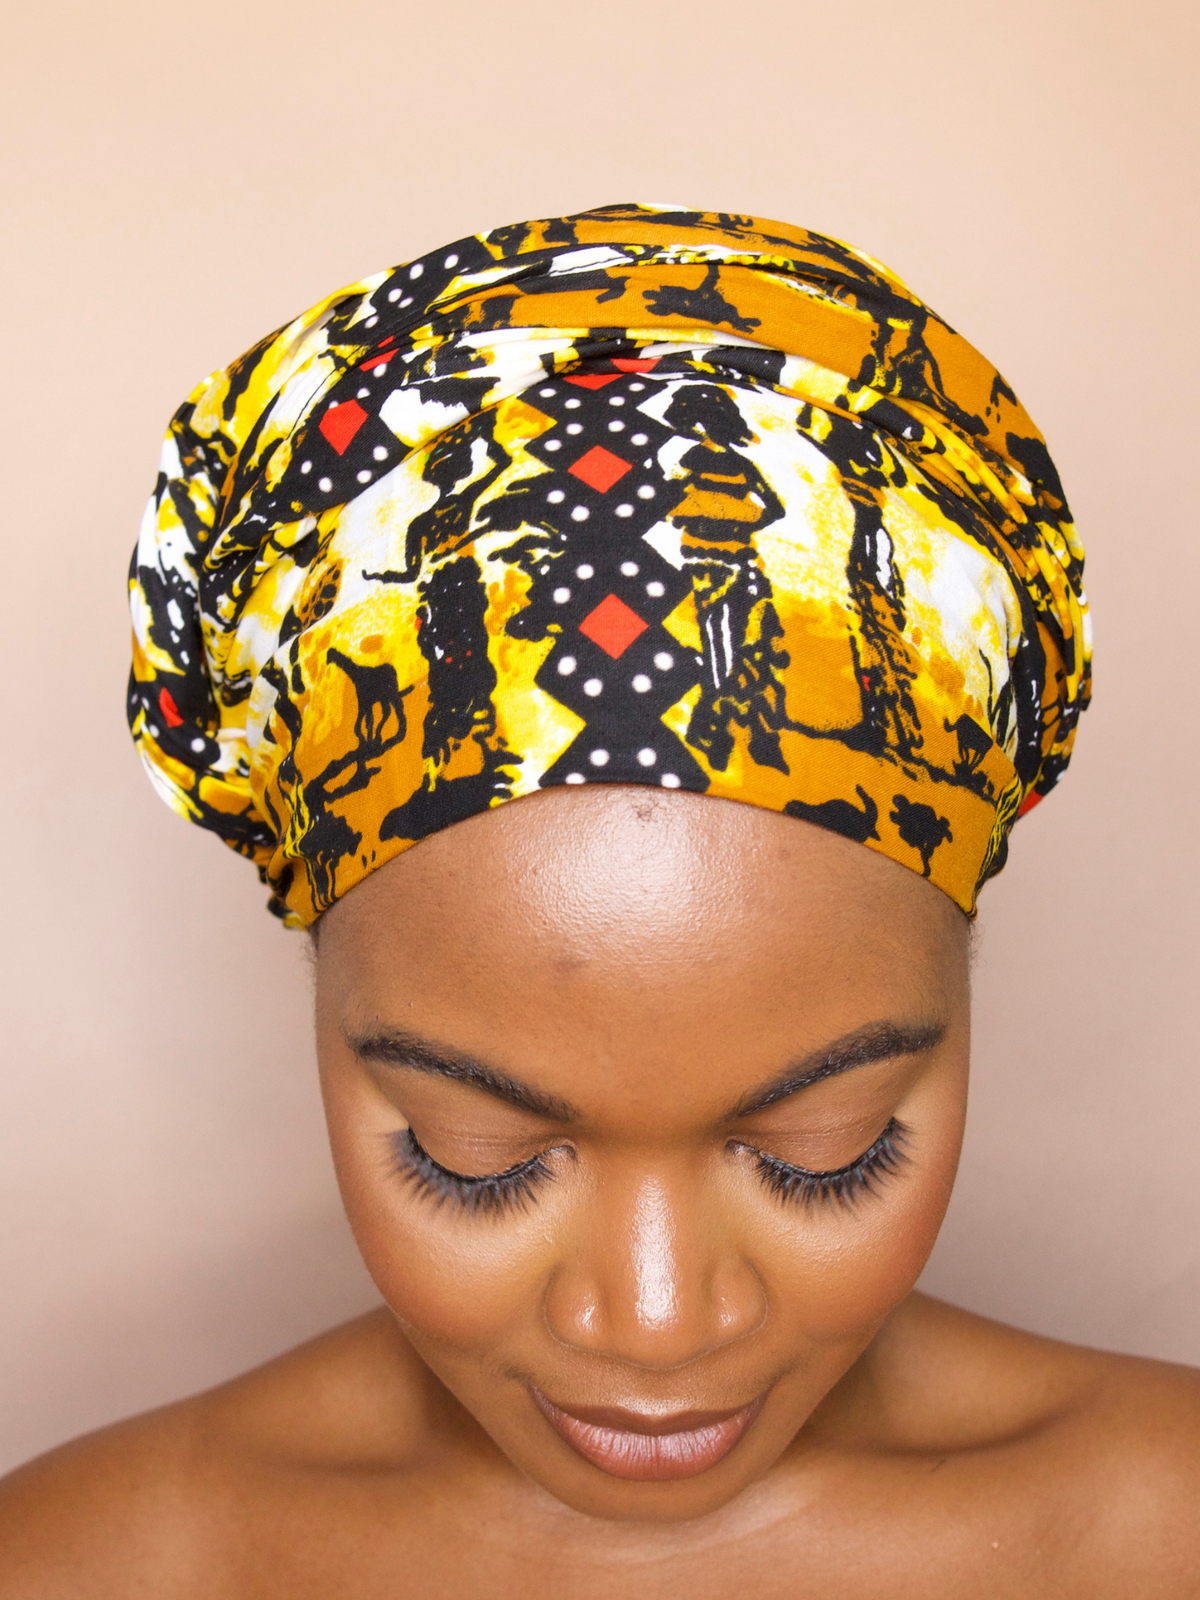 Nadré Art of Women Headwrap